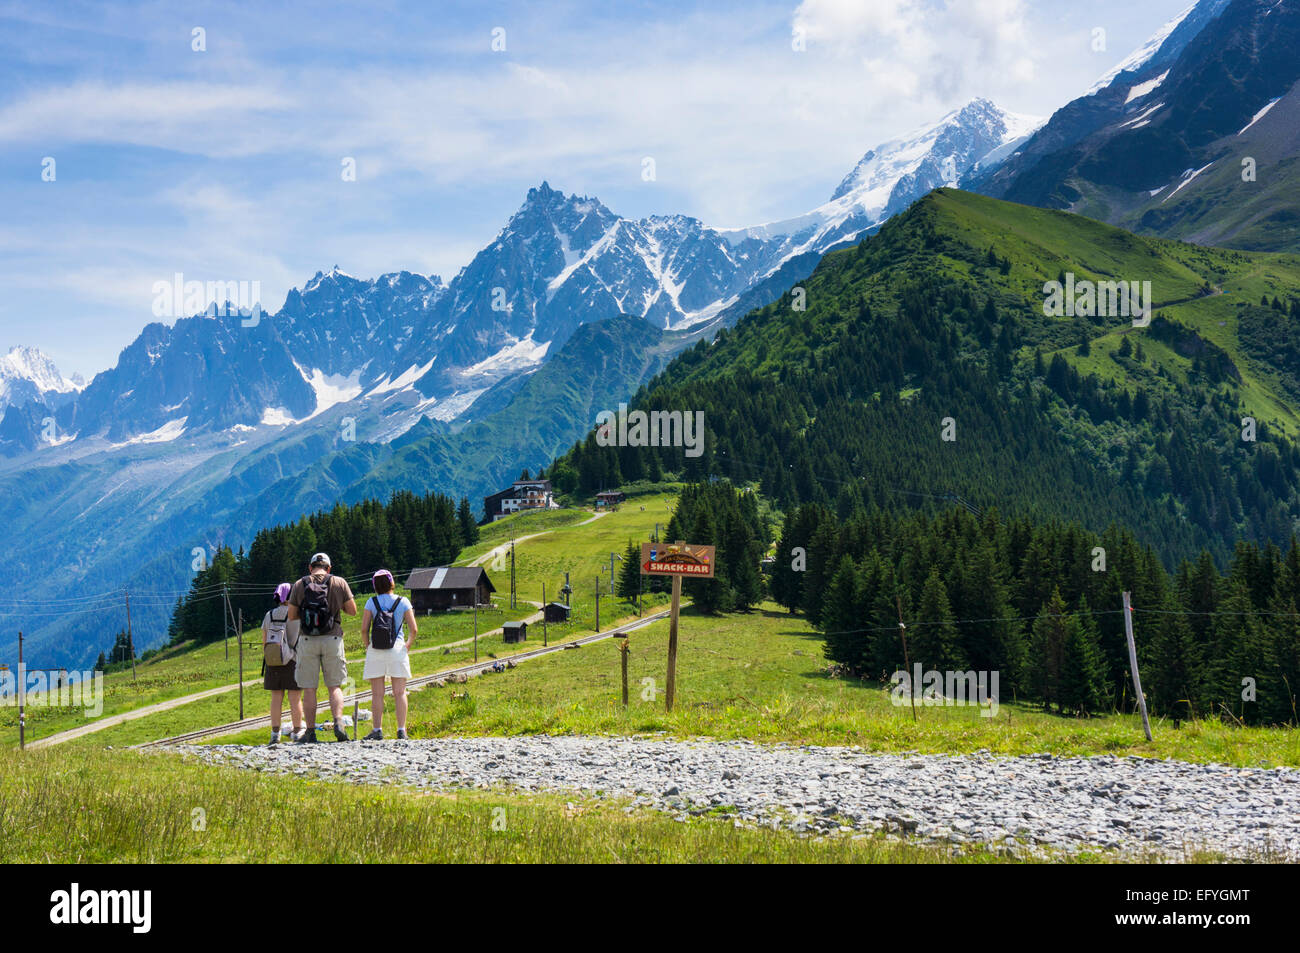 Walkers escursionismo a piedi a Bellevue sopra Les Houches con l'Aiguille du Midi dietro, Valle di Chamonix, sulle Alpi francesi, in Francia, in Europa in estate Foto Stock